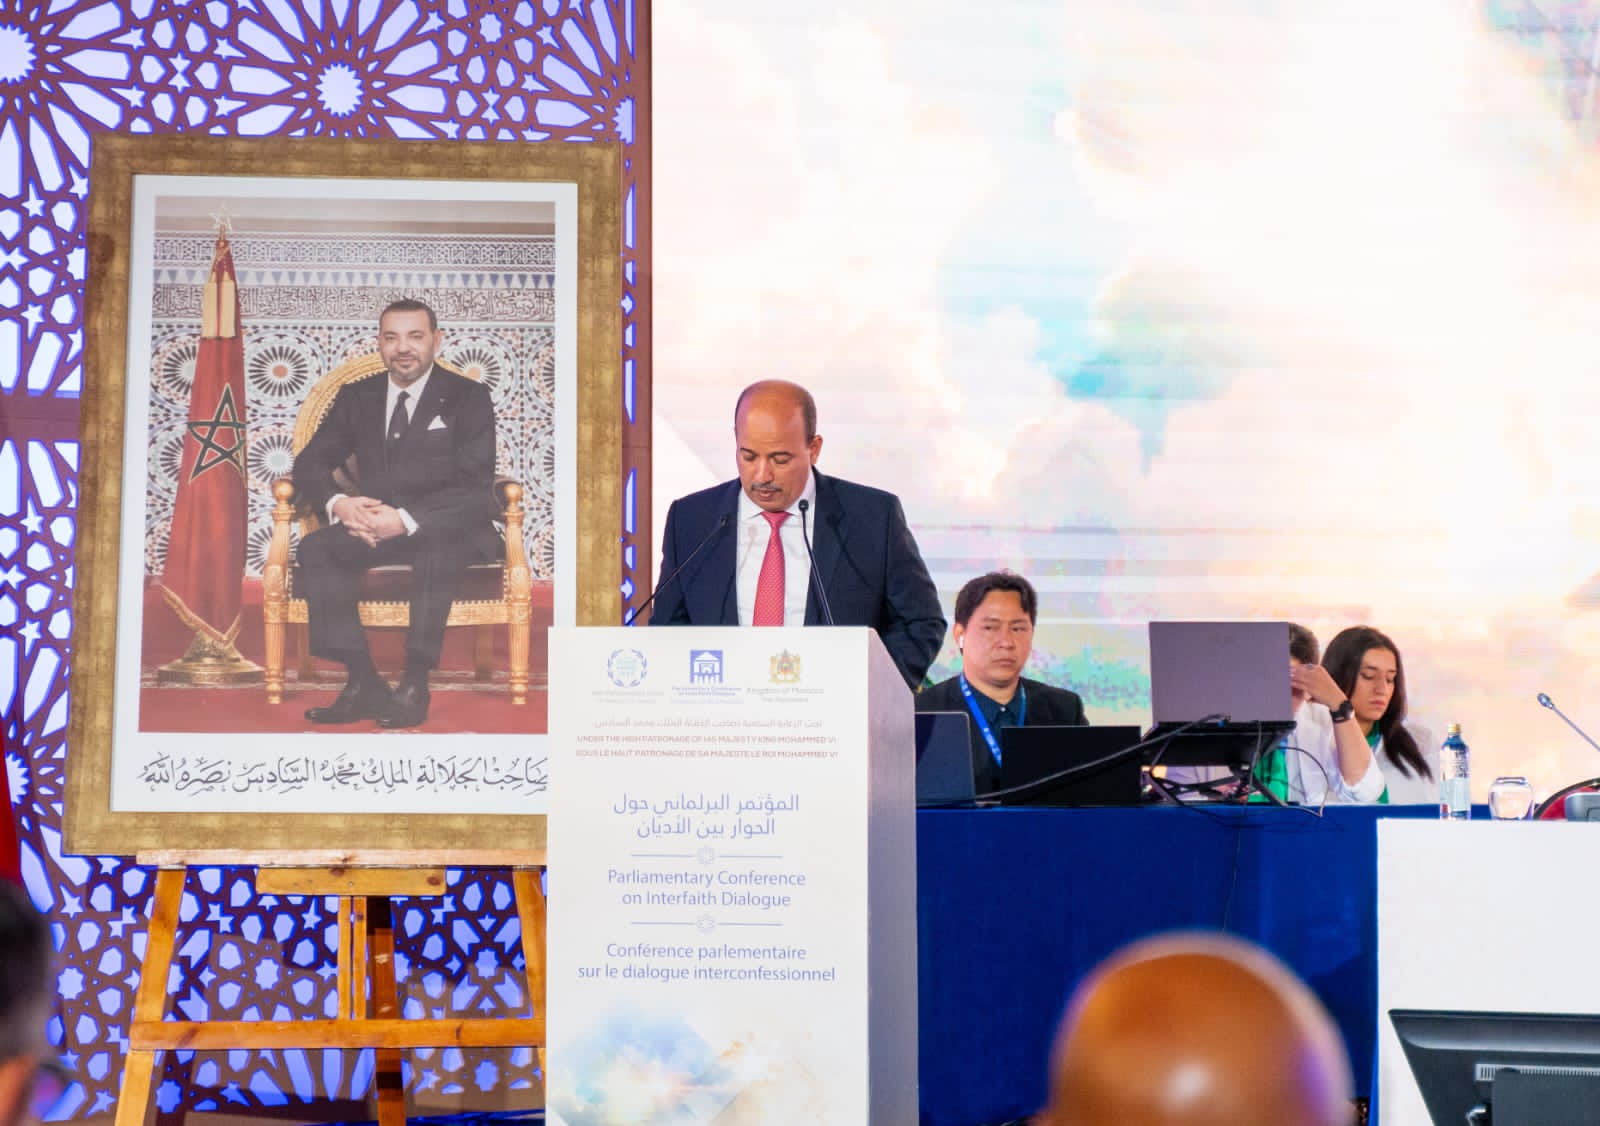 ميارة: مأسسة الحوار بين الأديان ضرورة ونأمل أن نجعل مؤتمر مراكش محطة تاريخية باعتماد مقترح الملك